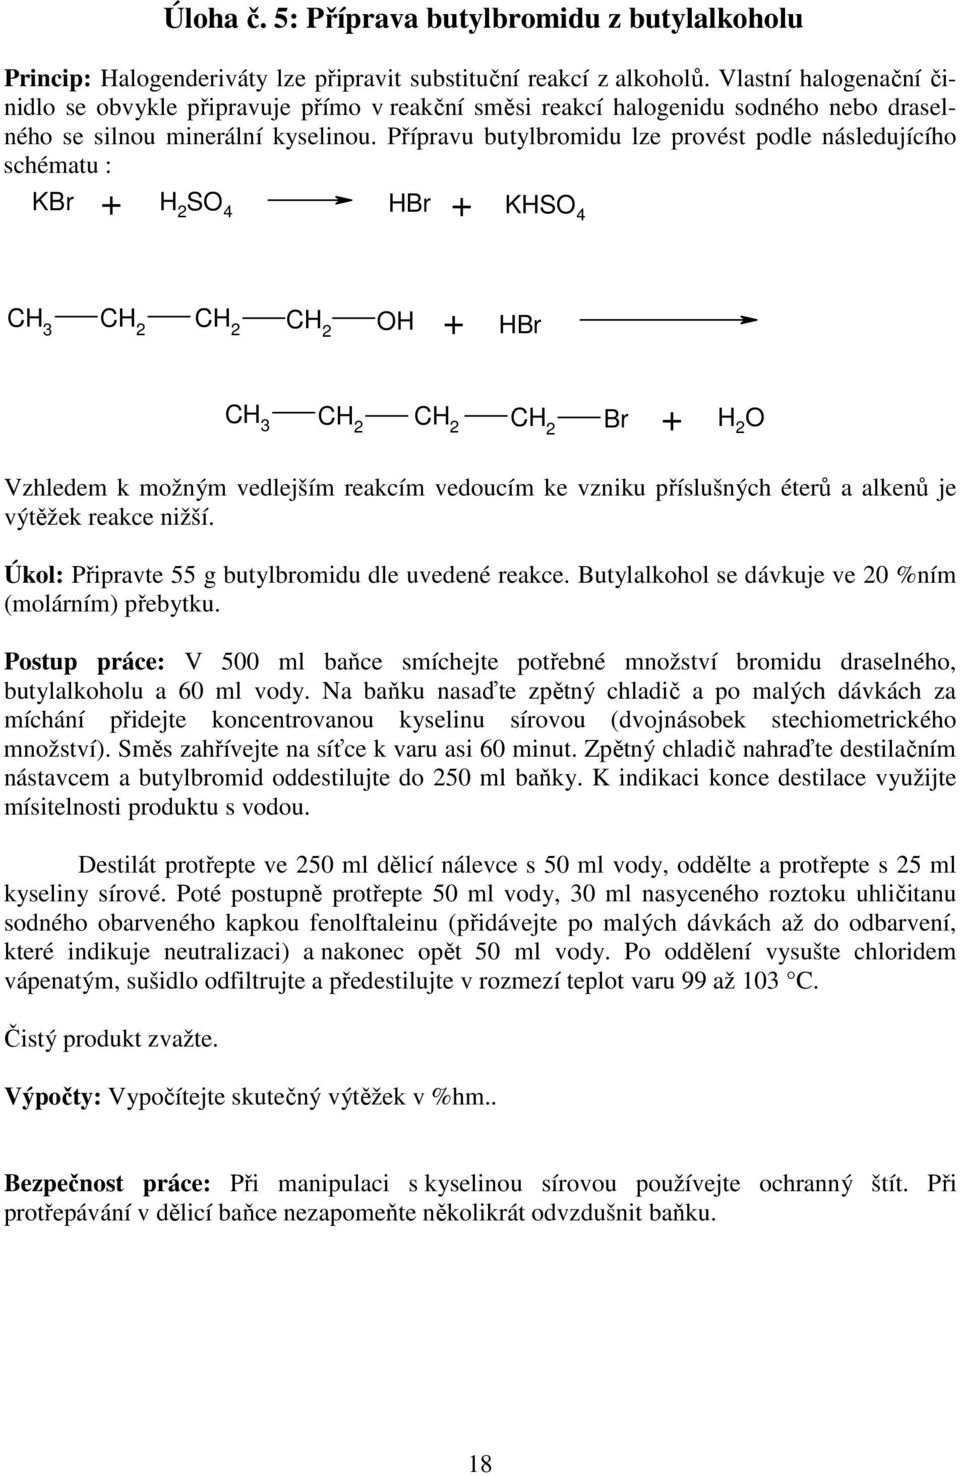 Přípravu butylbromidu lze provést podle následujícího schématu : KBr + H 2 S 4 HBr + KHS 4 CH 3 H + HBr CH 3 Br + H 2 Vzhledem k možným vedlejším reakcím vedoucím ke vzniku příslušných éterů a alkenů